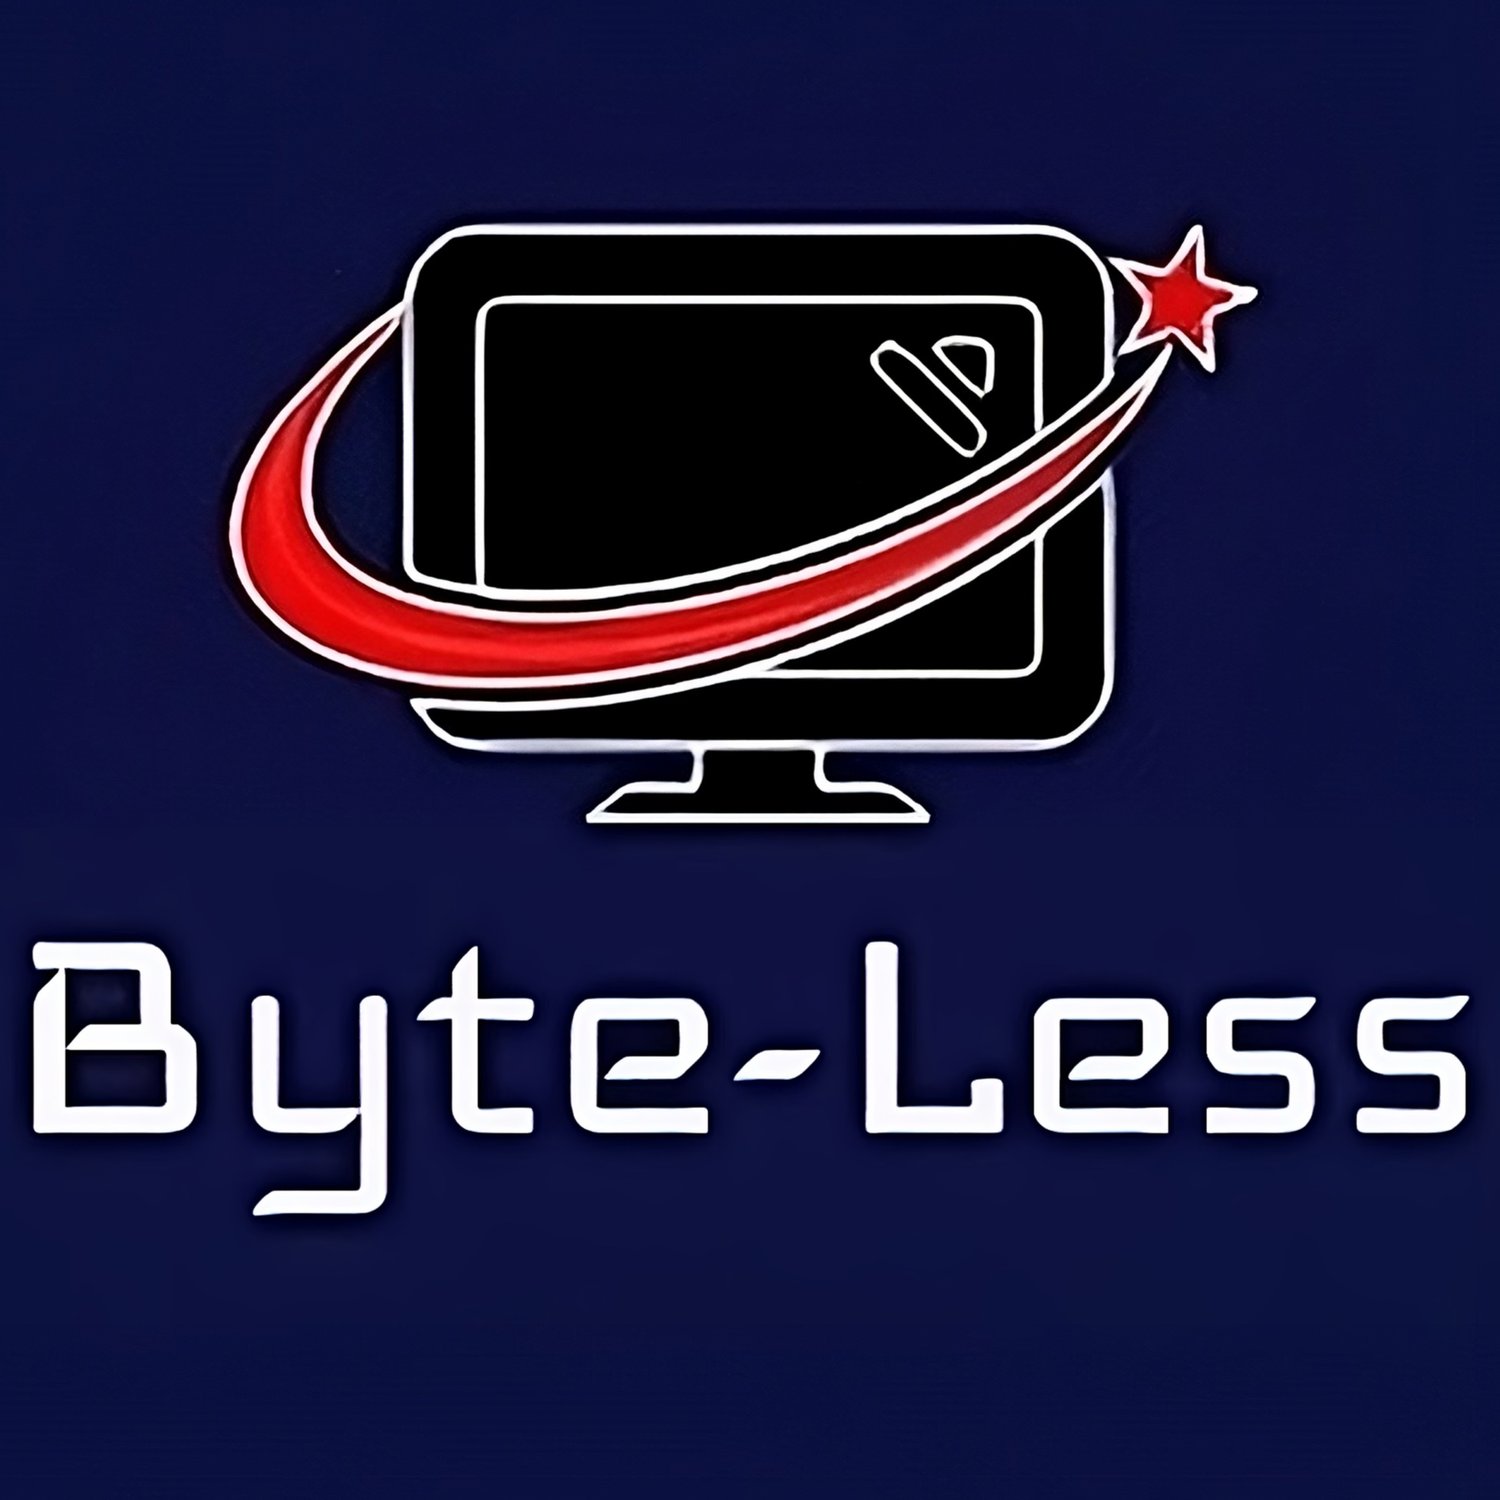 Byte-Less, LLC